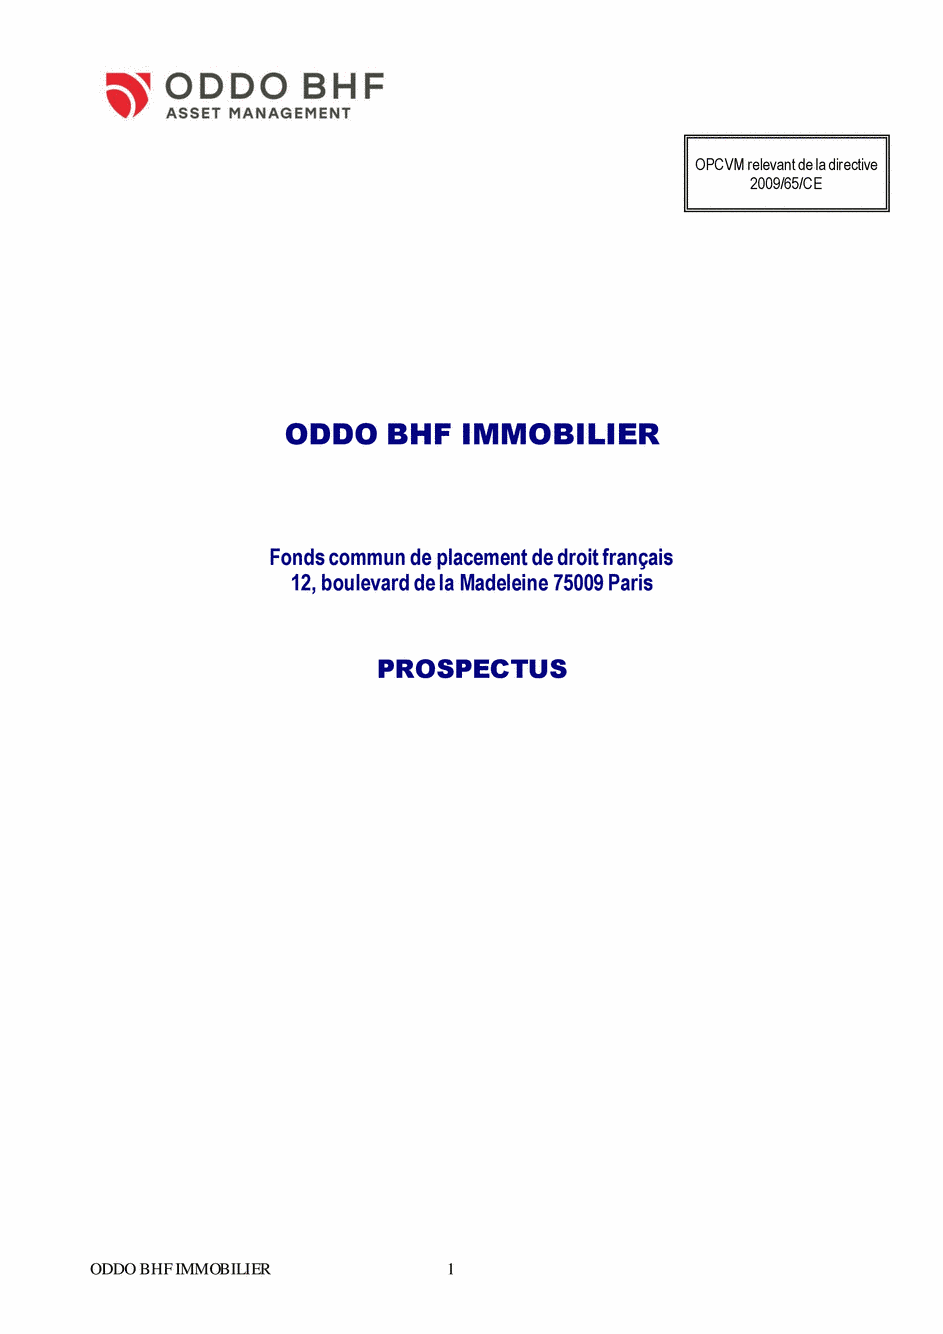 Prospectus ODDO BHF IMMOBILIER DR-EUR - 14/02/2020 - Français